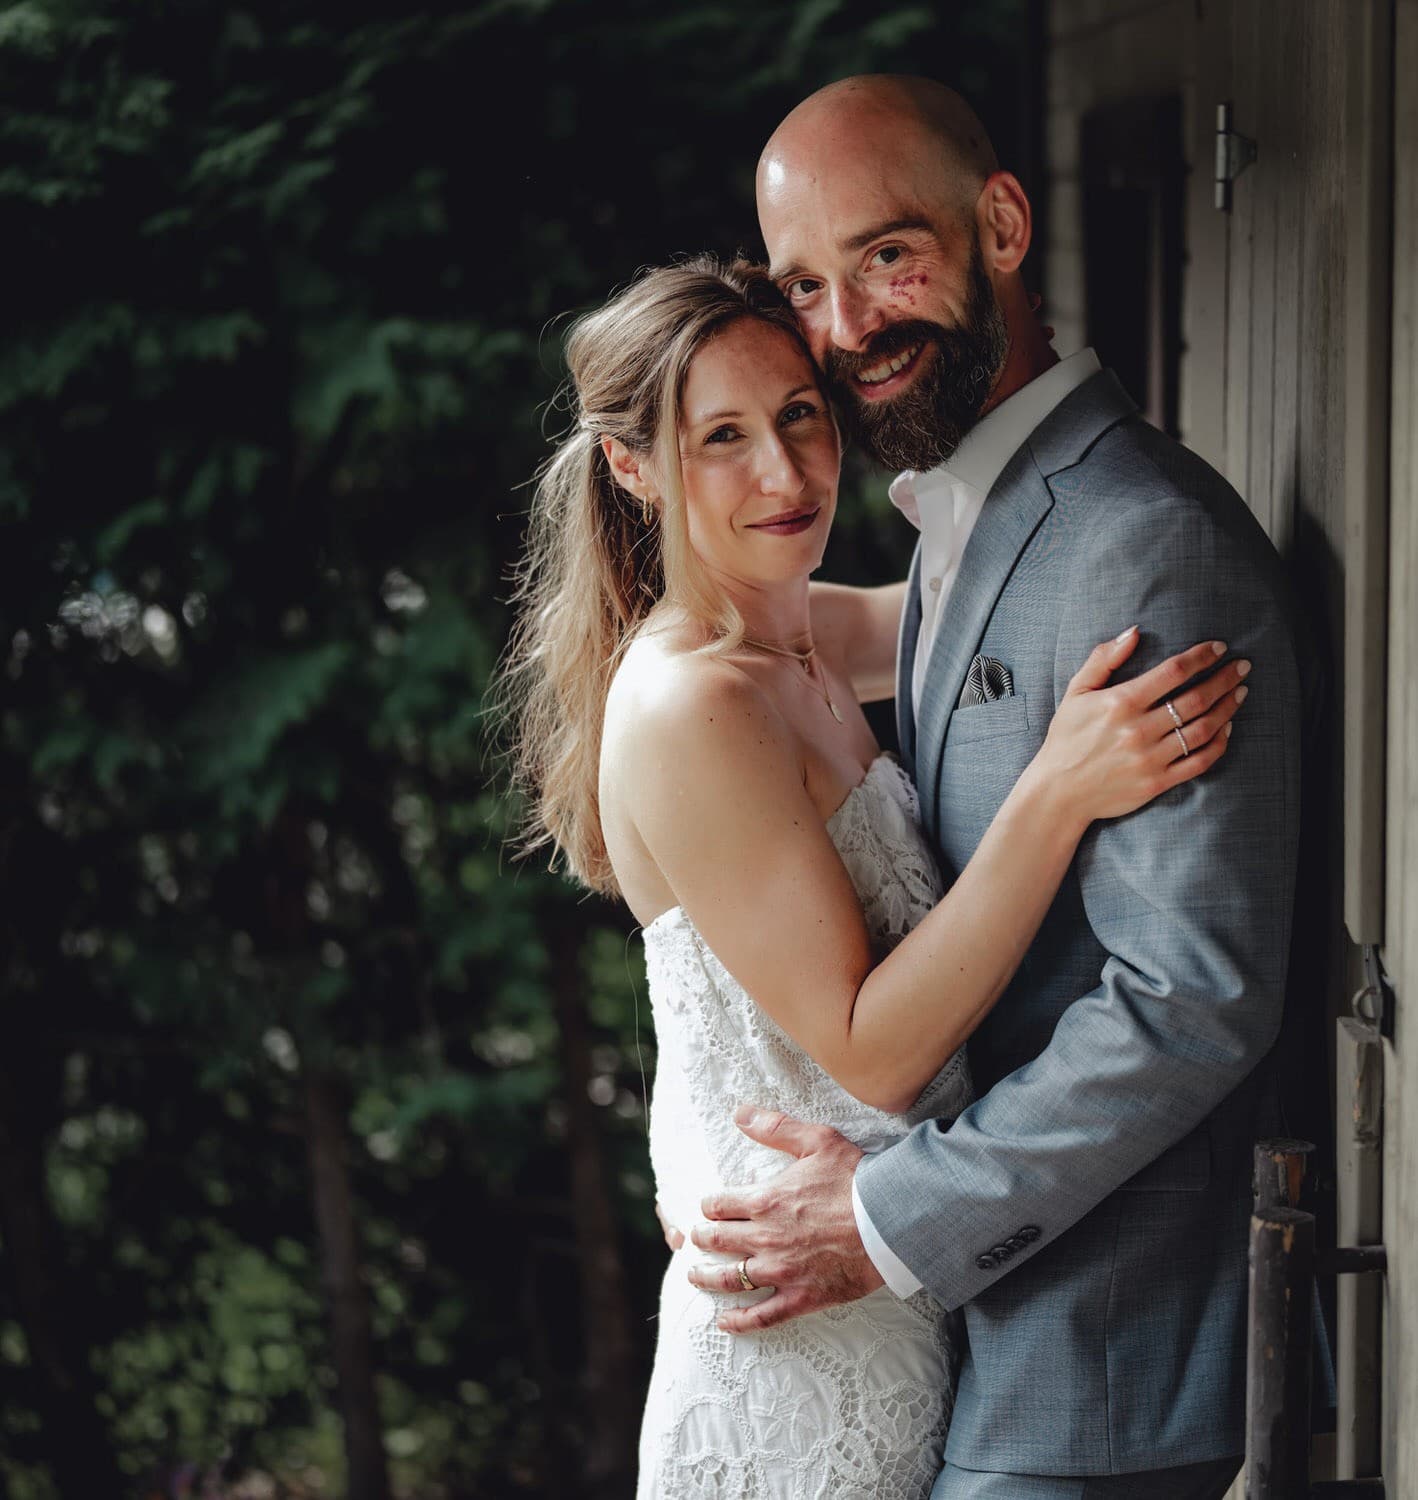 Ottawa Wedding Photography - Intimate Backyard Wedding